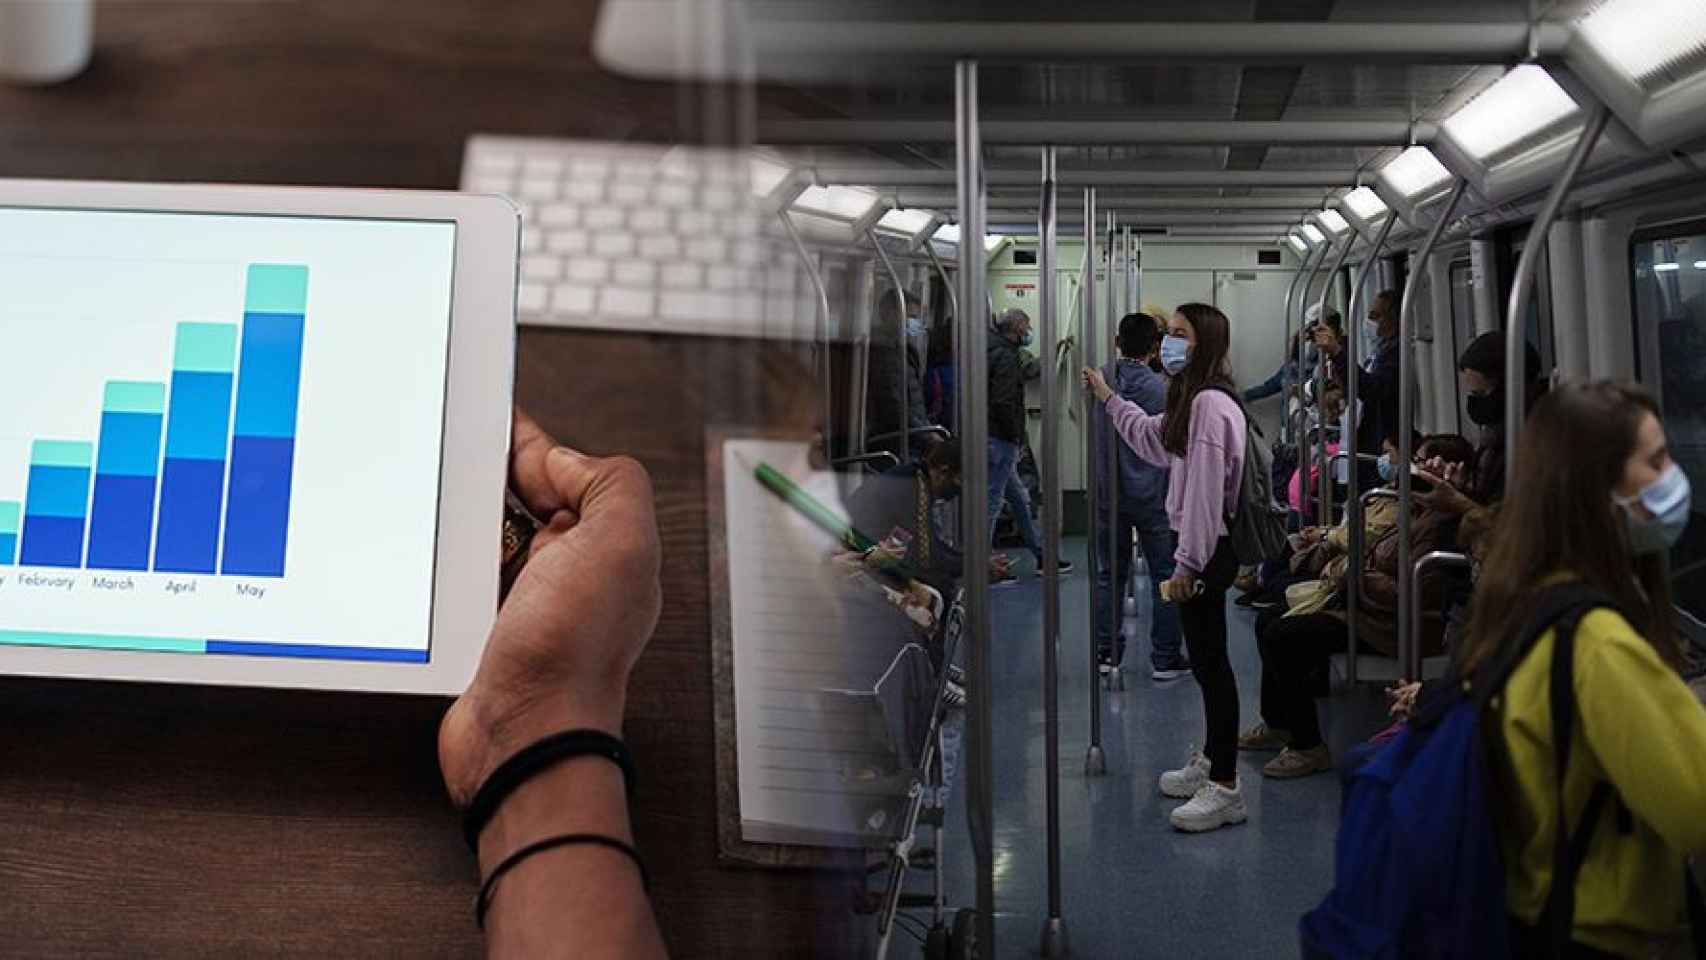 Usuarios del metro en Barcelona y, a la derecha, una persona mirando unas estadísticas en una tablet / FOTOMONTAJE